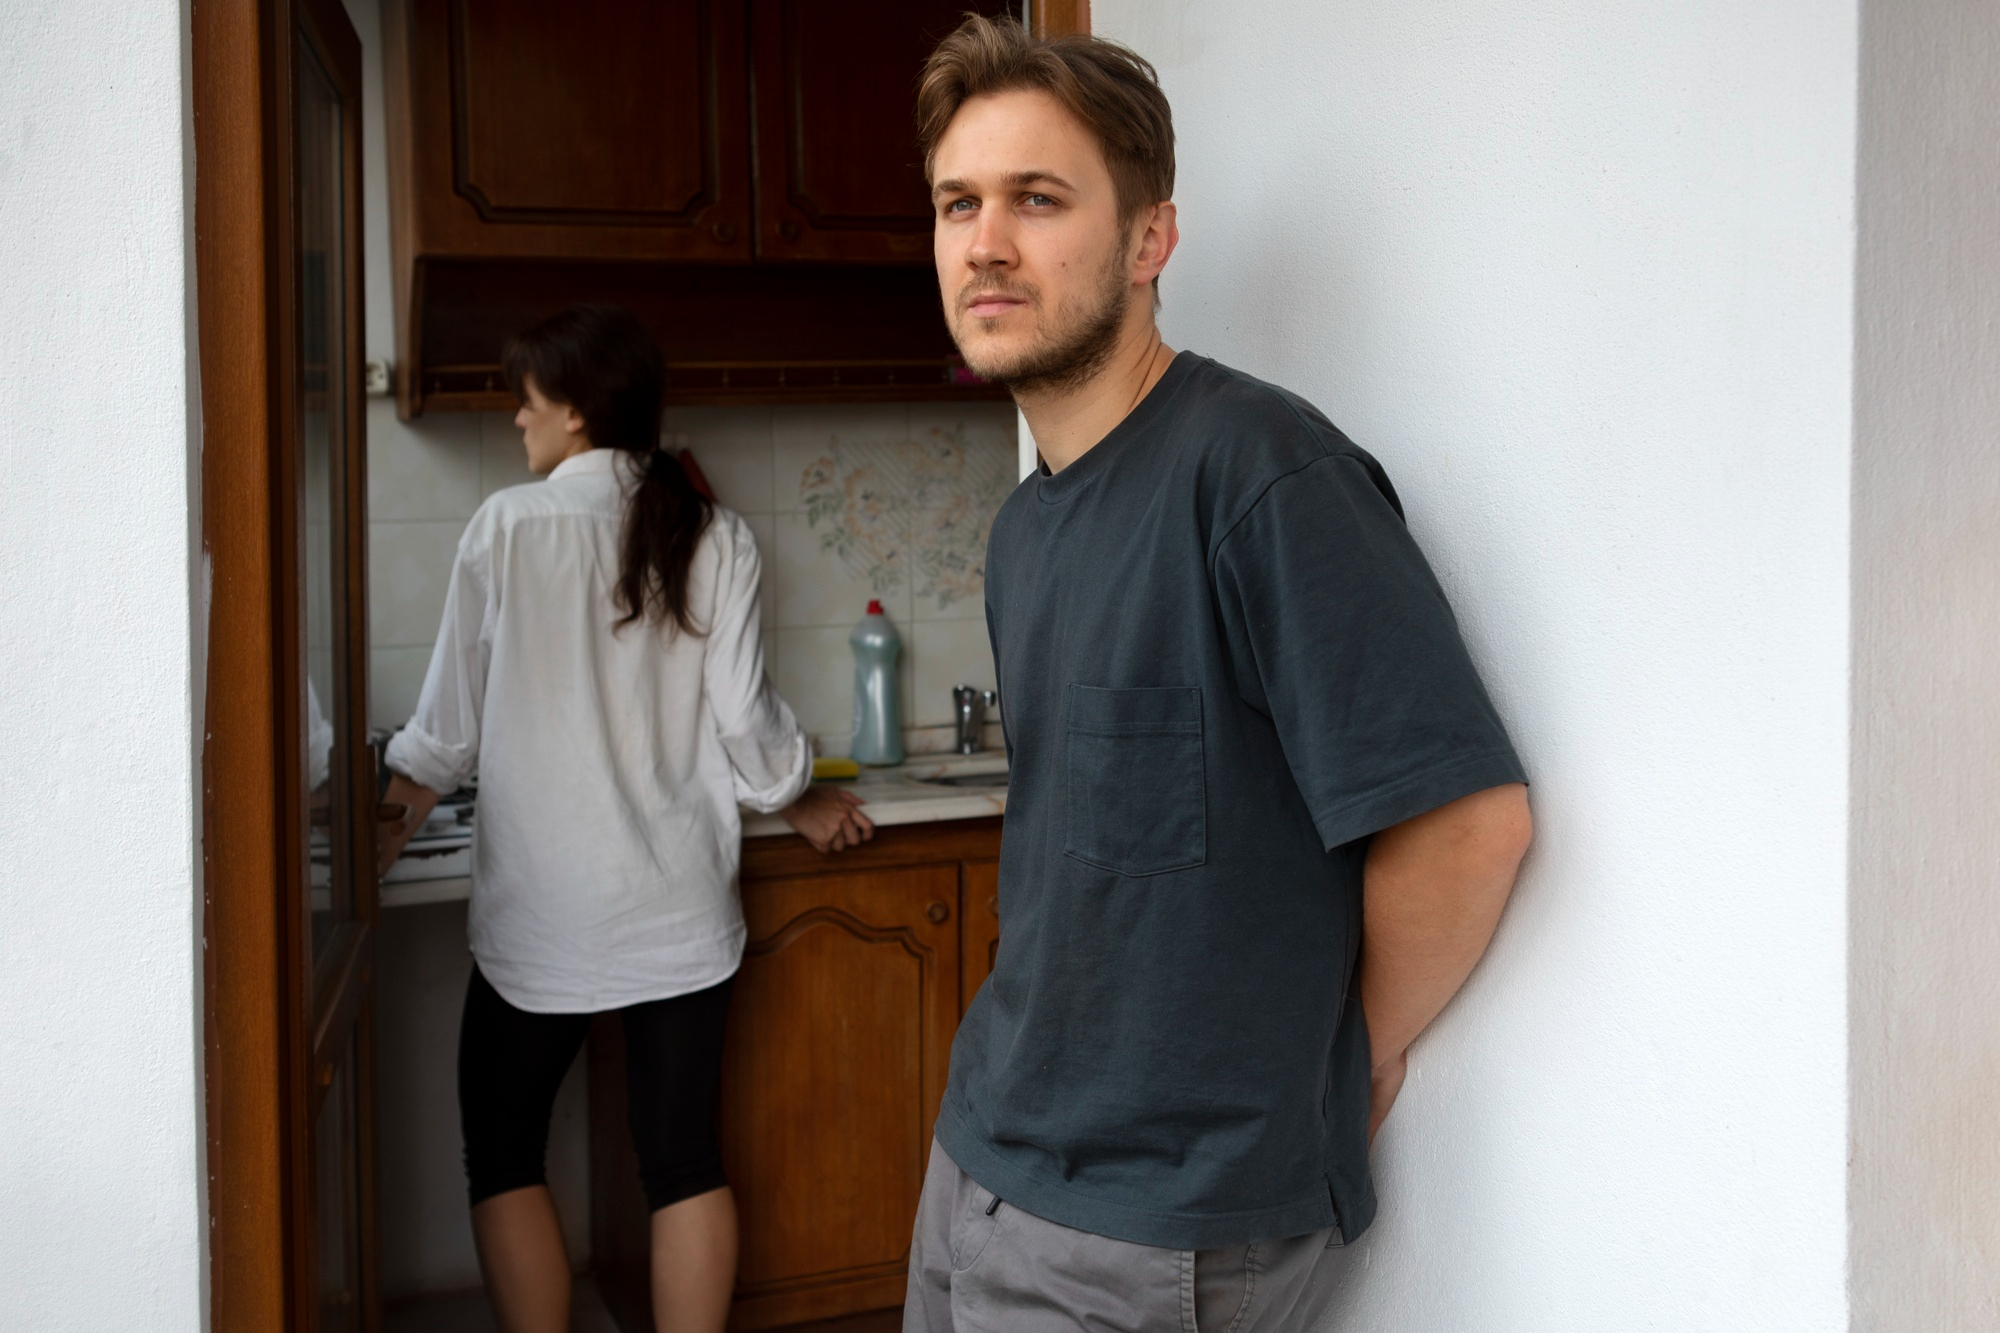 Un homme contrarié se tient près de la porte tandis qu'une femme se tient dans la cuisine | Source : Freepik